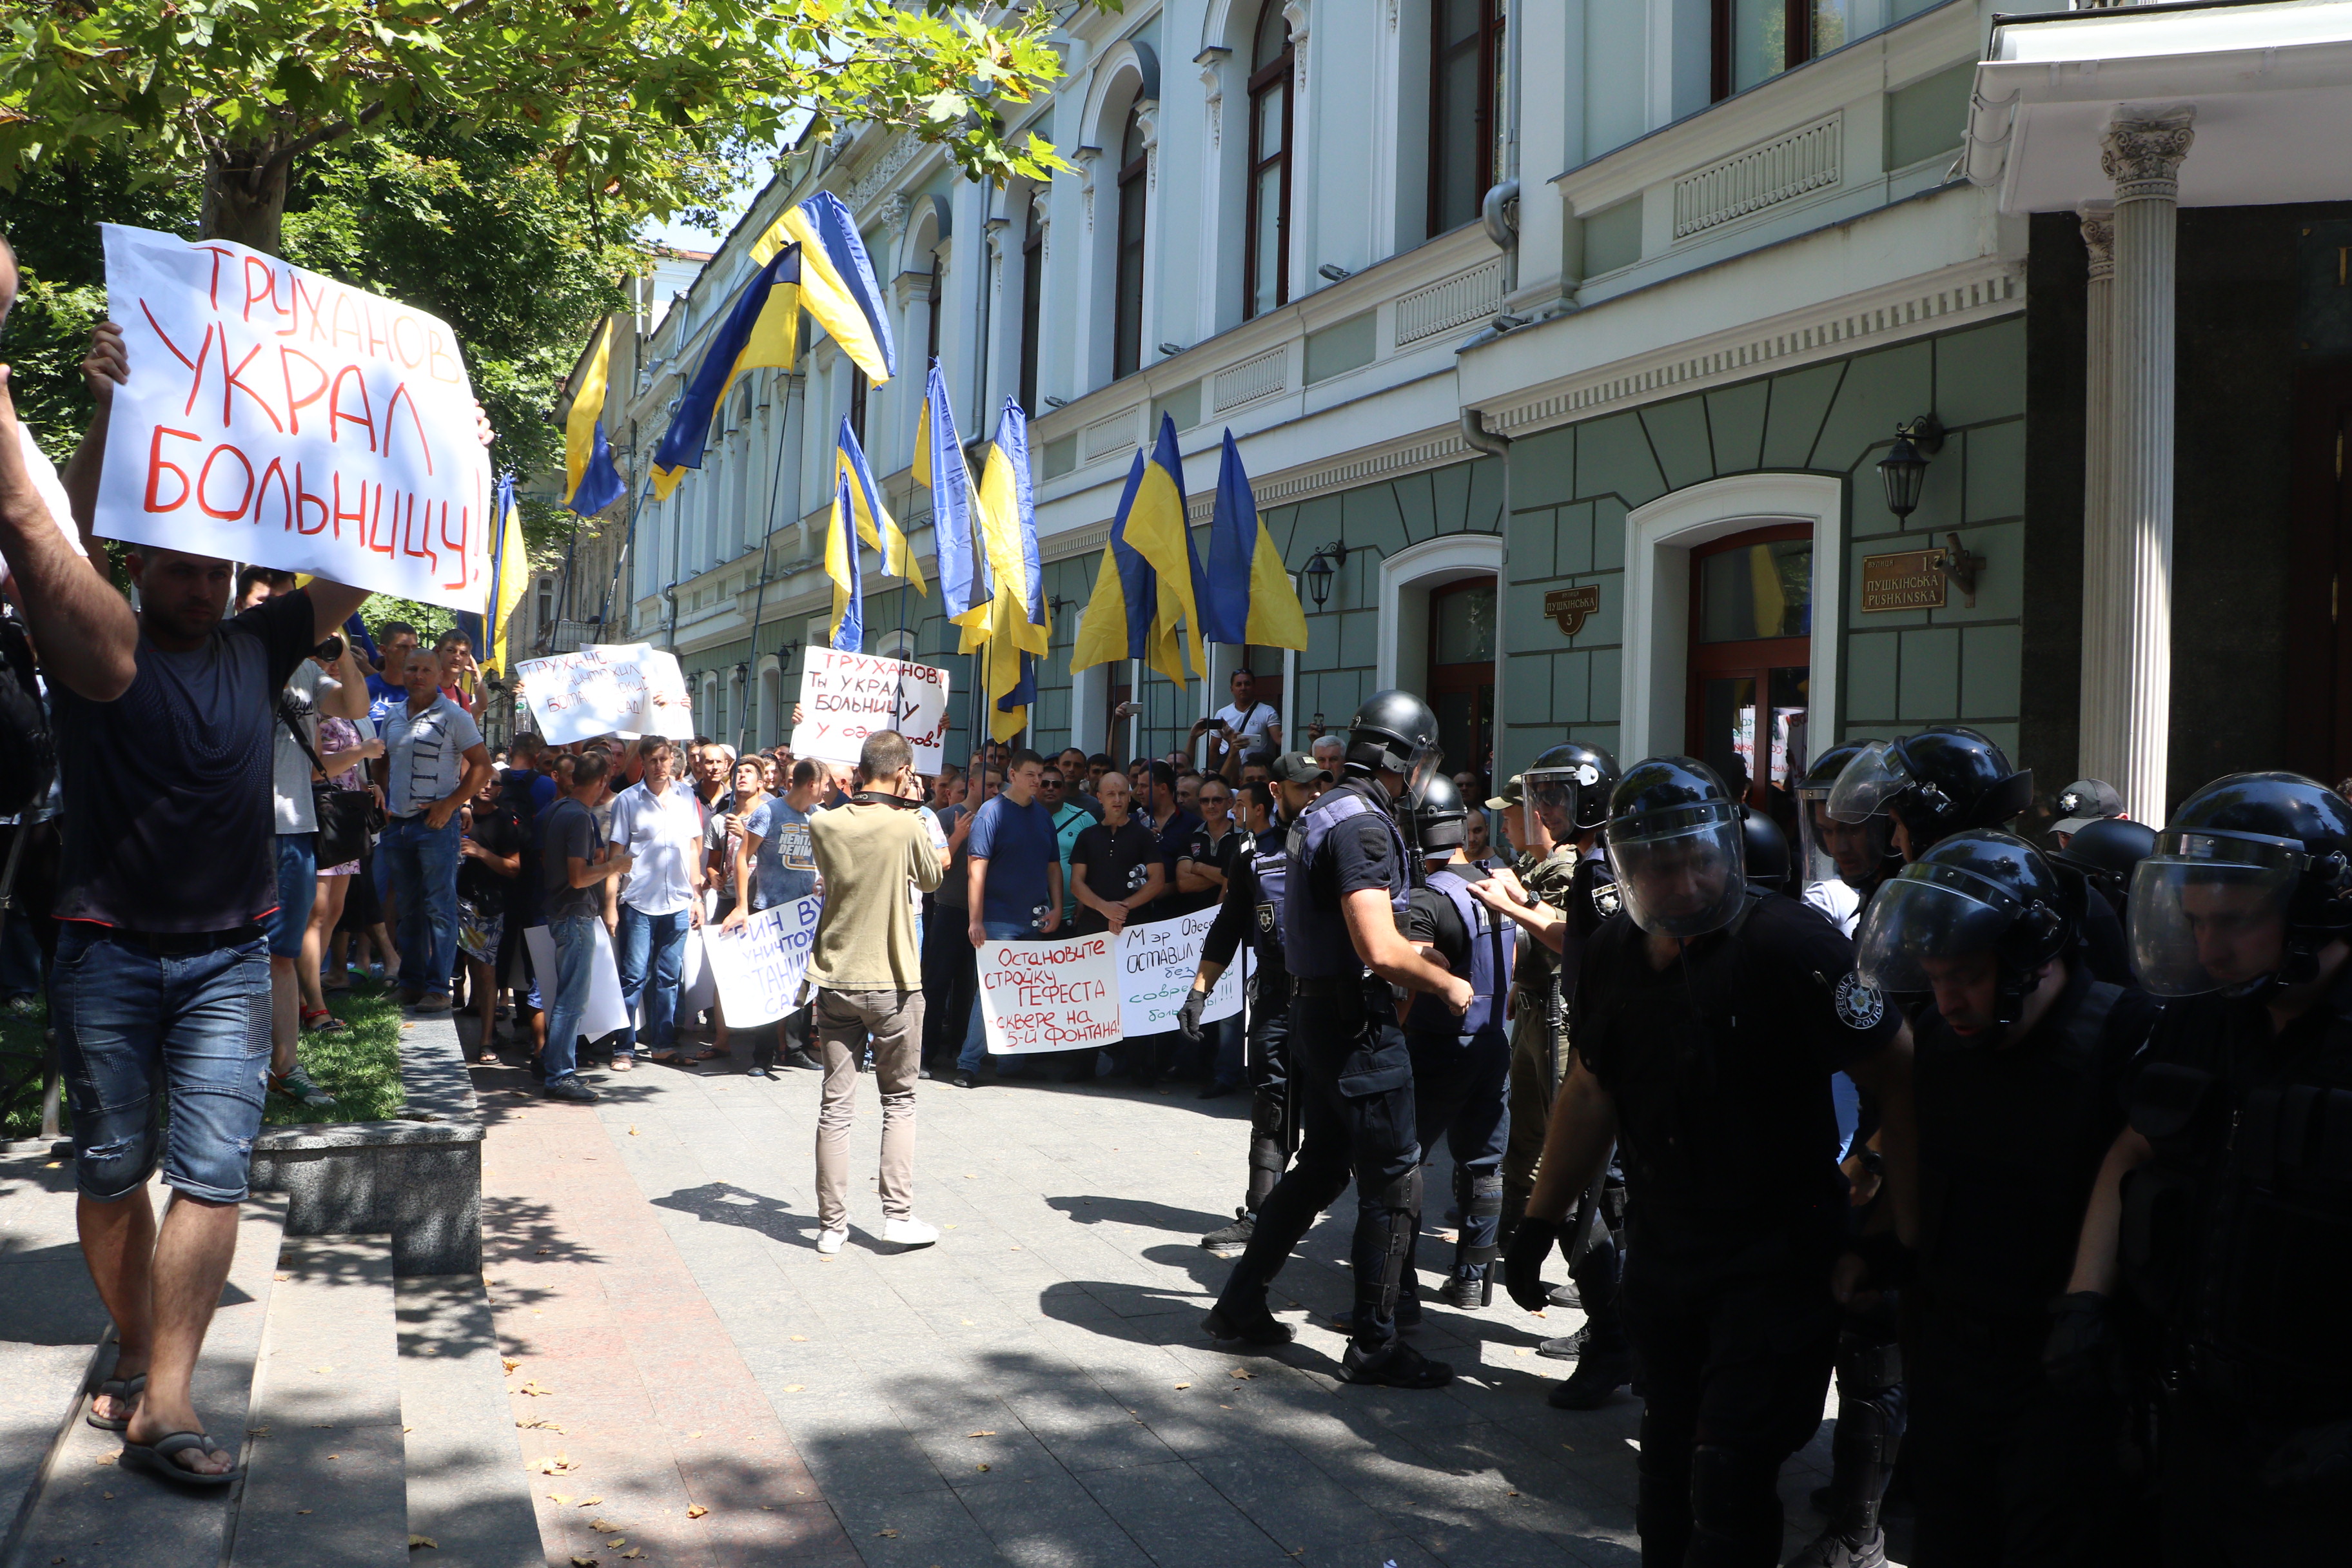 "Простите, нас достало": в Одессе жители вышли на масштабный митинг против Труханова